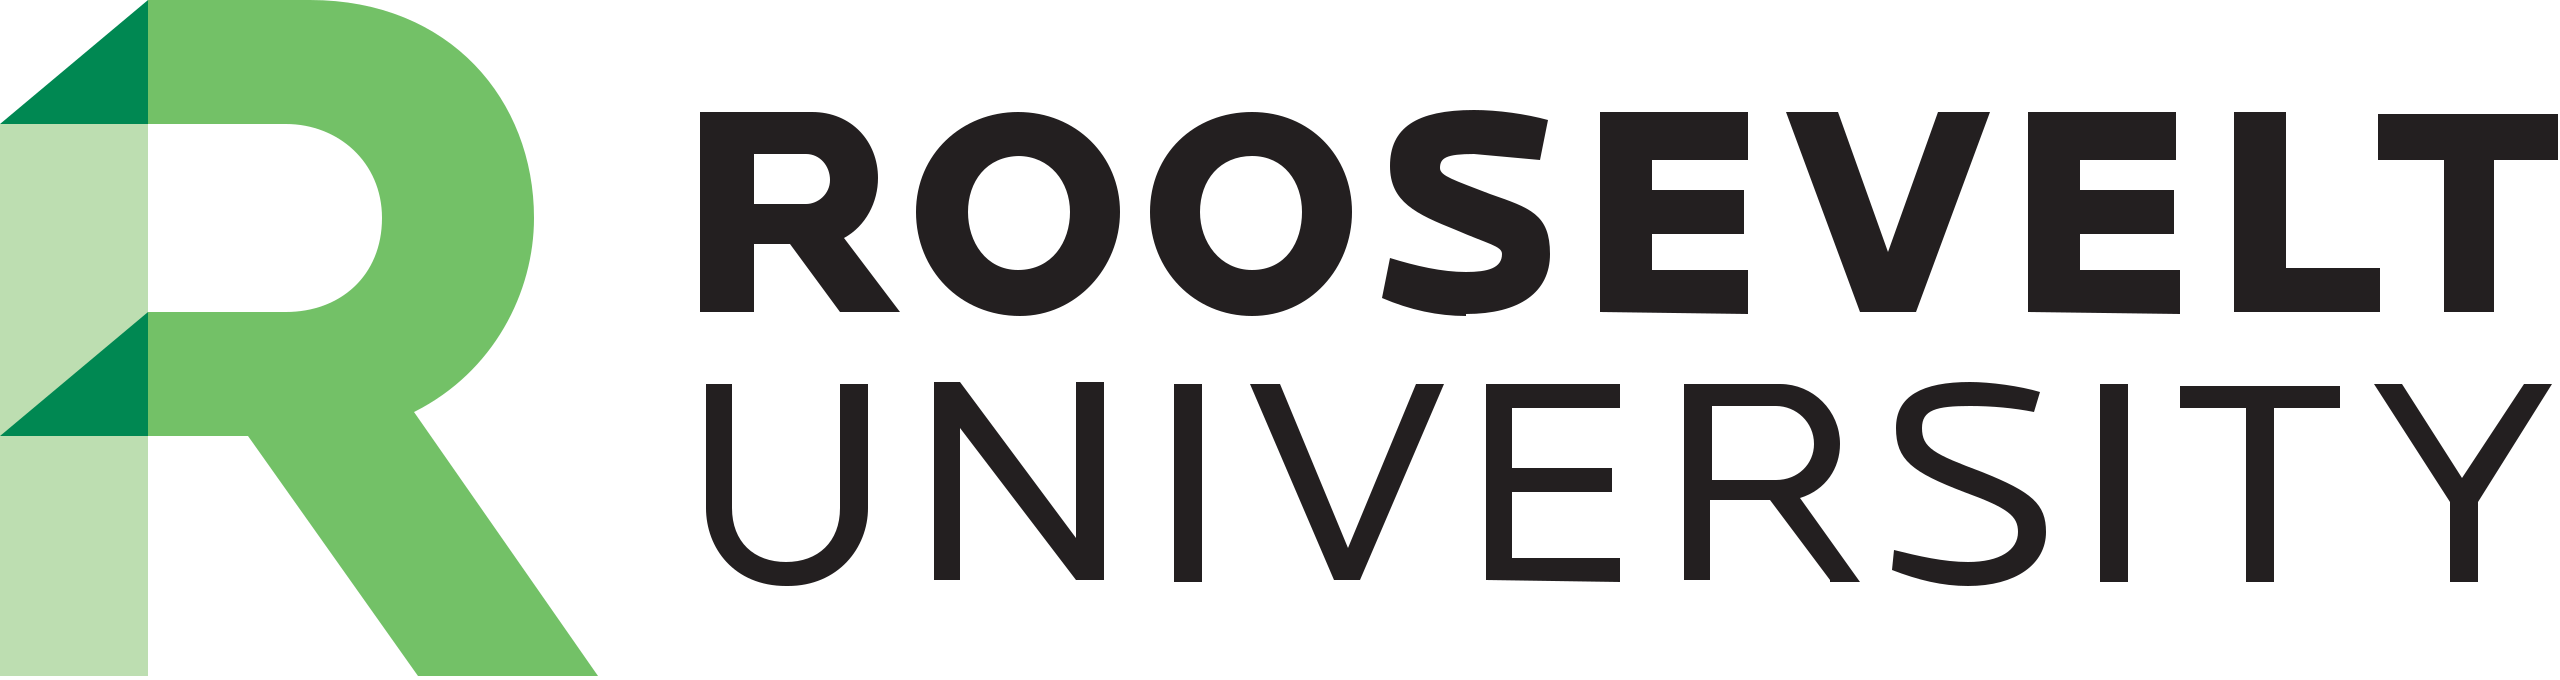 Roosevelt_University_Logo